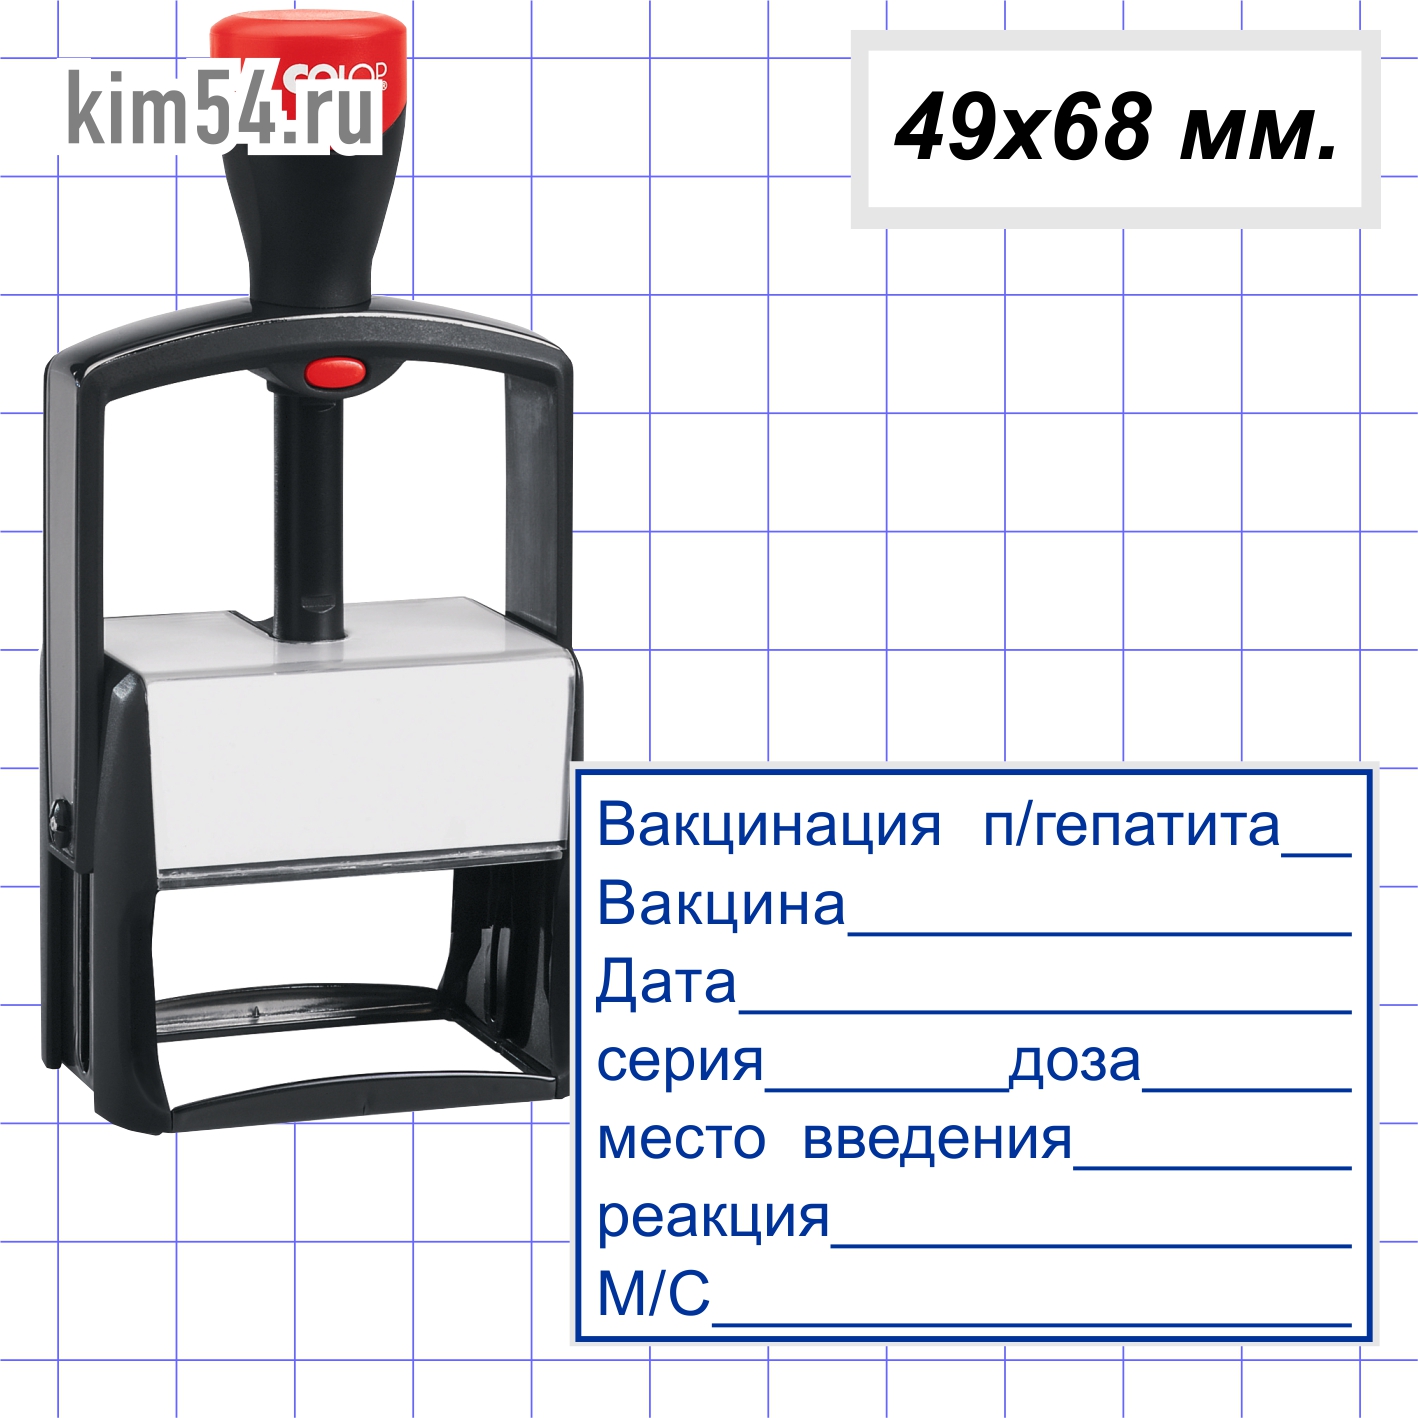 Автоматический штамп. Заказать штамп в Новосибирске